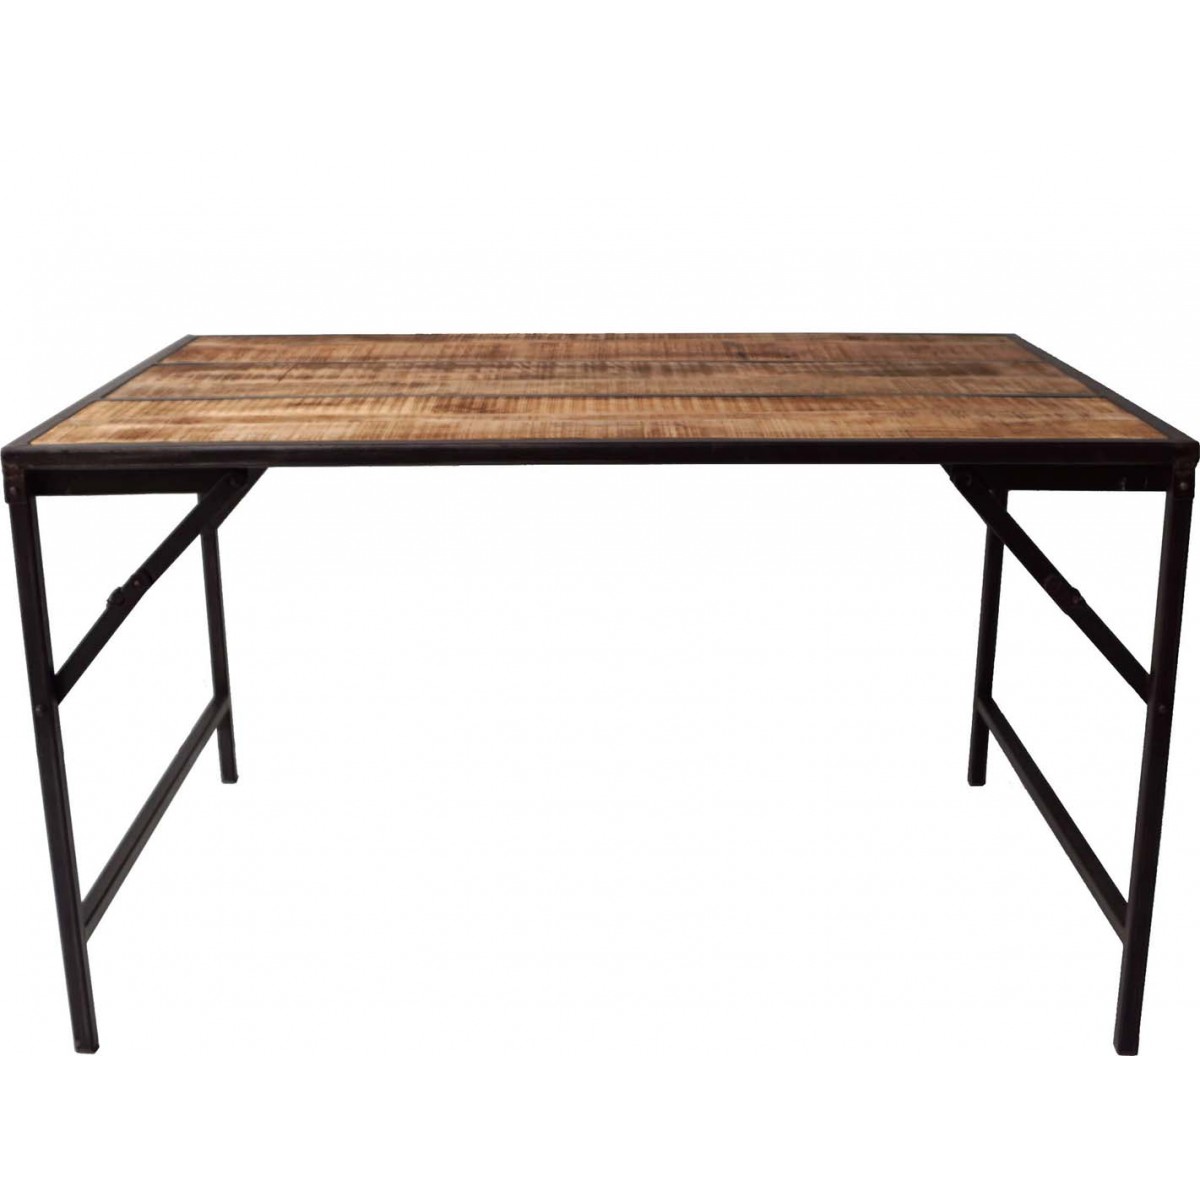 Charlie τραπέζι με μαύρη μεταλλική βάση και επιφάνεια από ξύλο μάνγκο σε φυσική απόχρωση 130x90x75 εκ